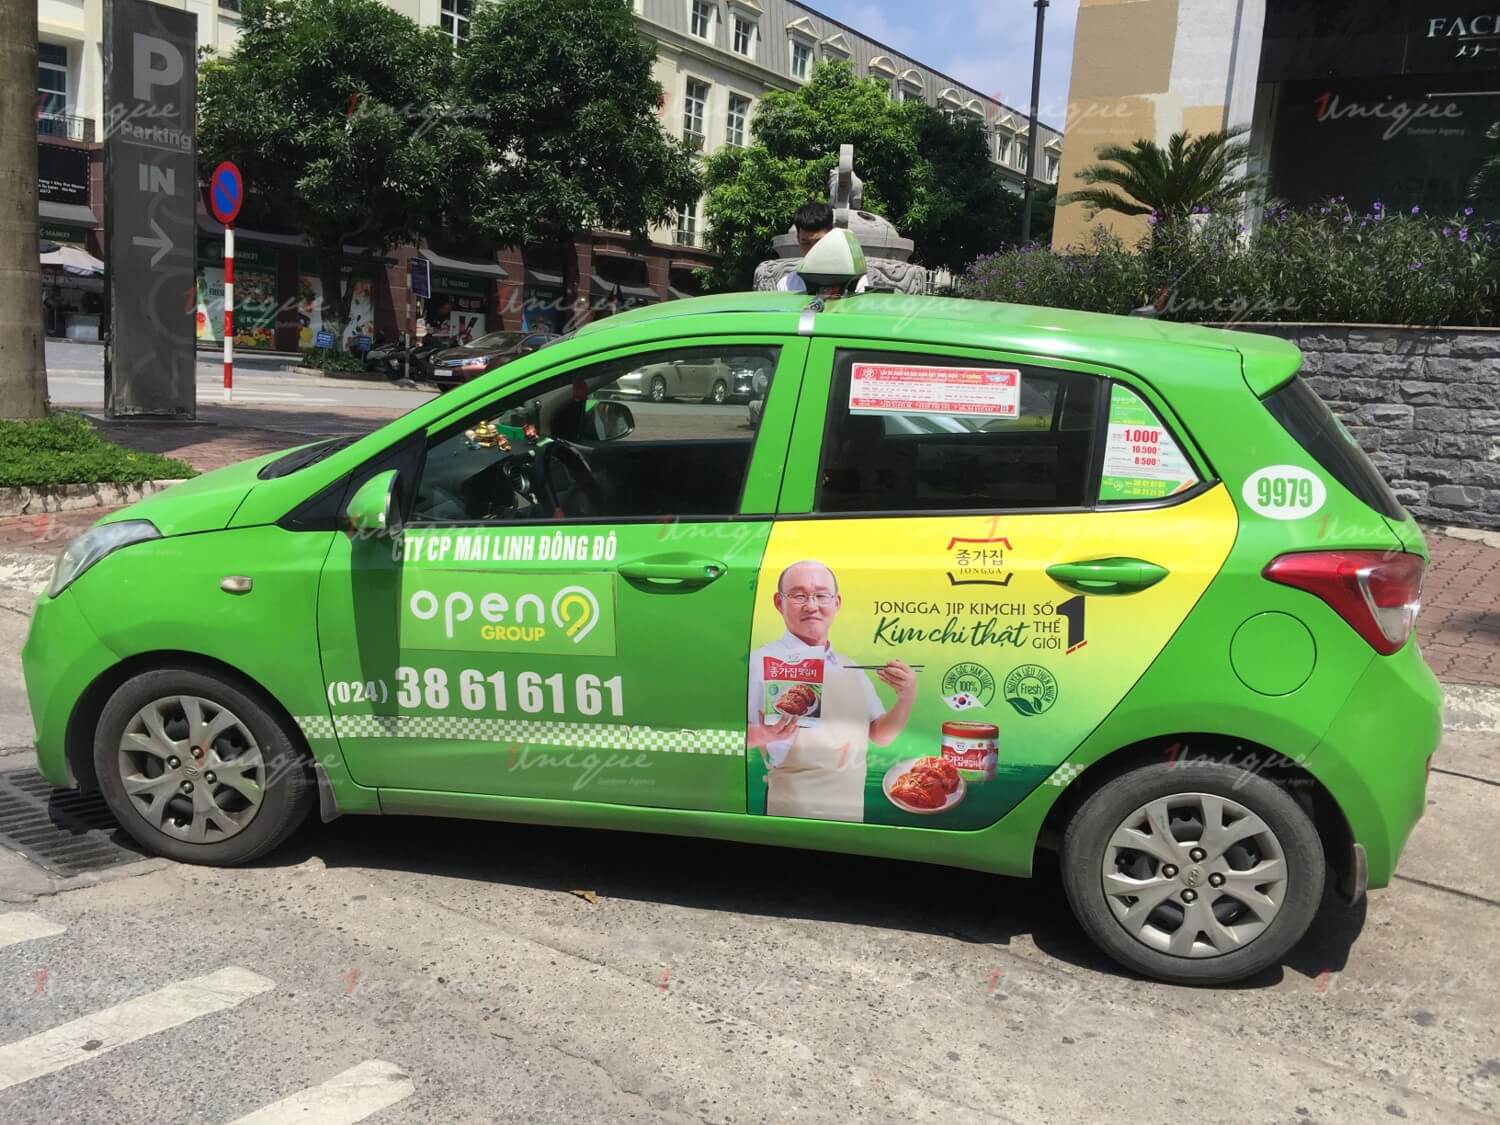 Quảng cáo trên xe taxi có cần giấy phép không? Luật và quy định quảng cáo trên taxi